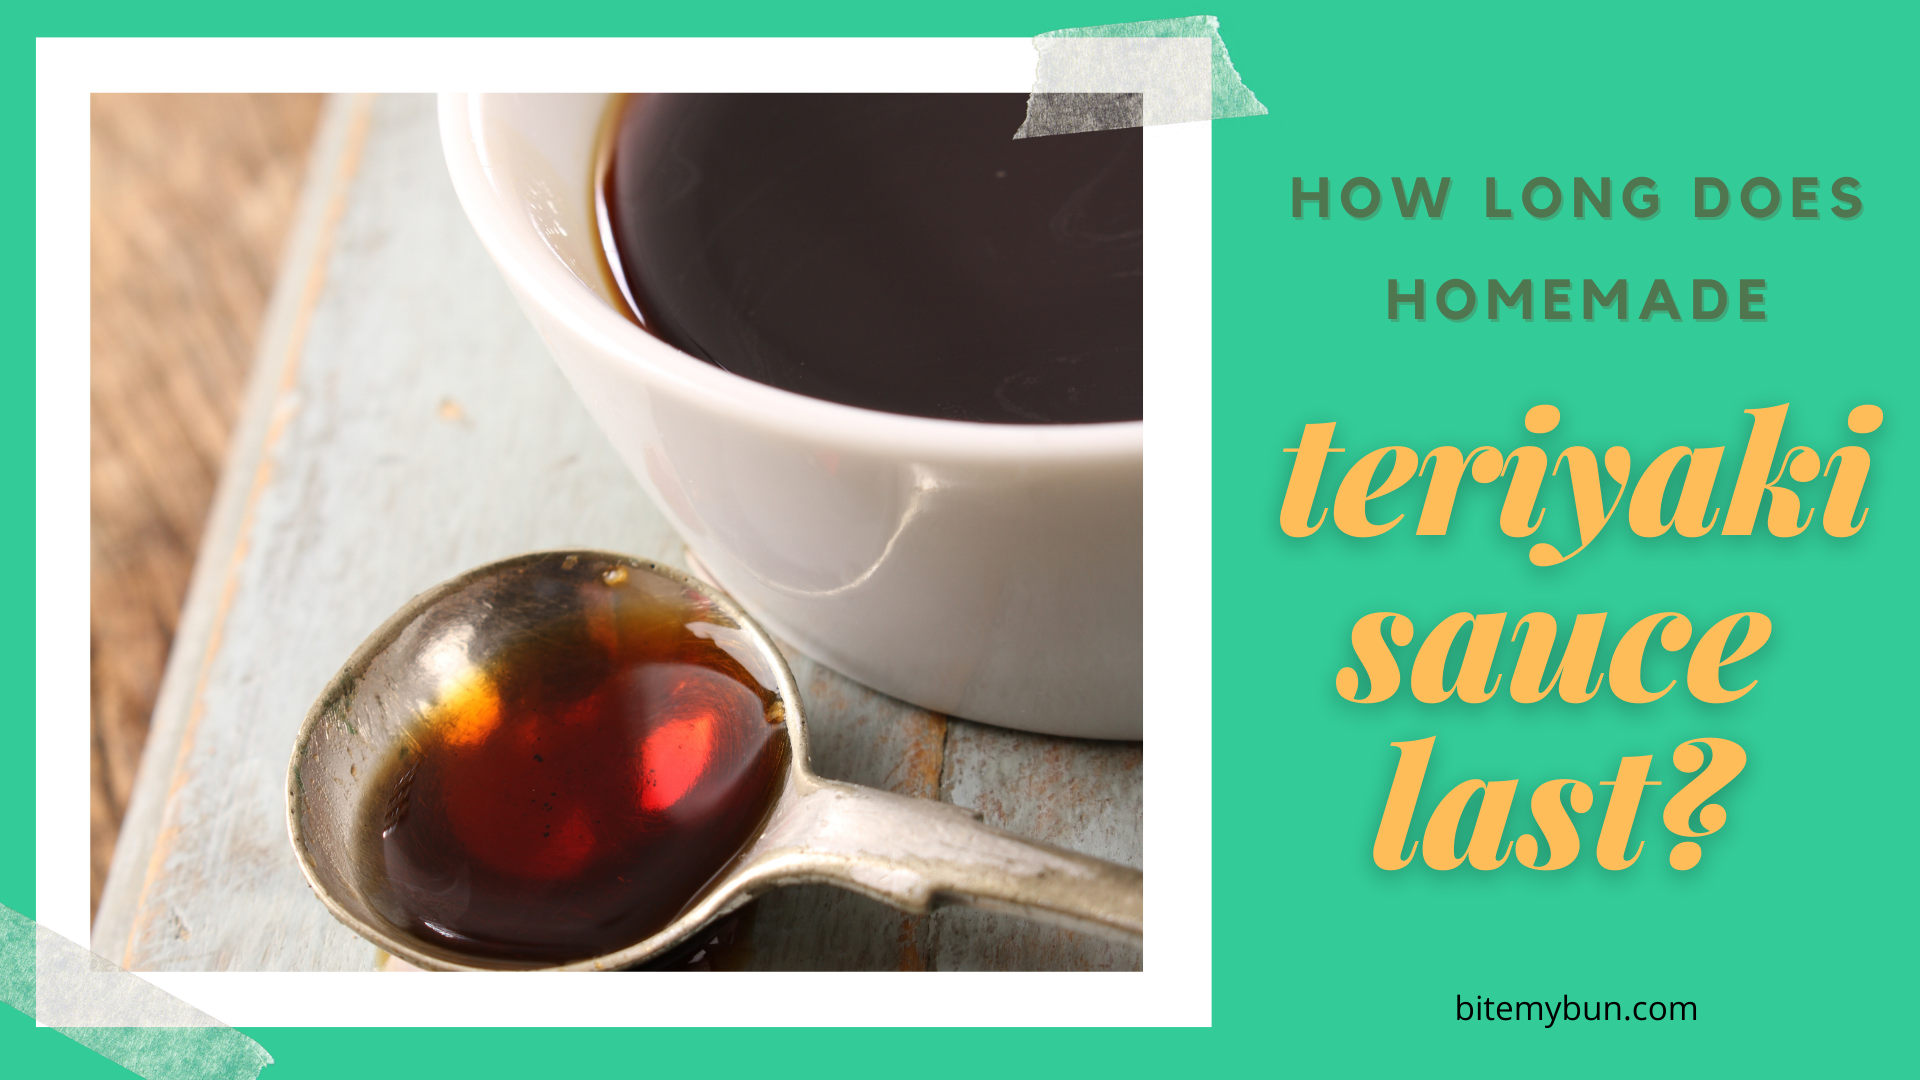 How long does homemade teriyaki sauce last?